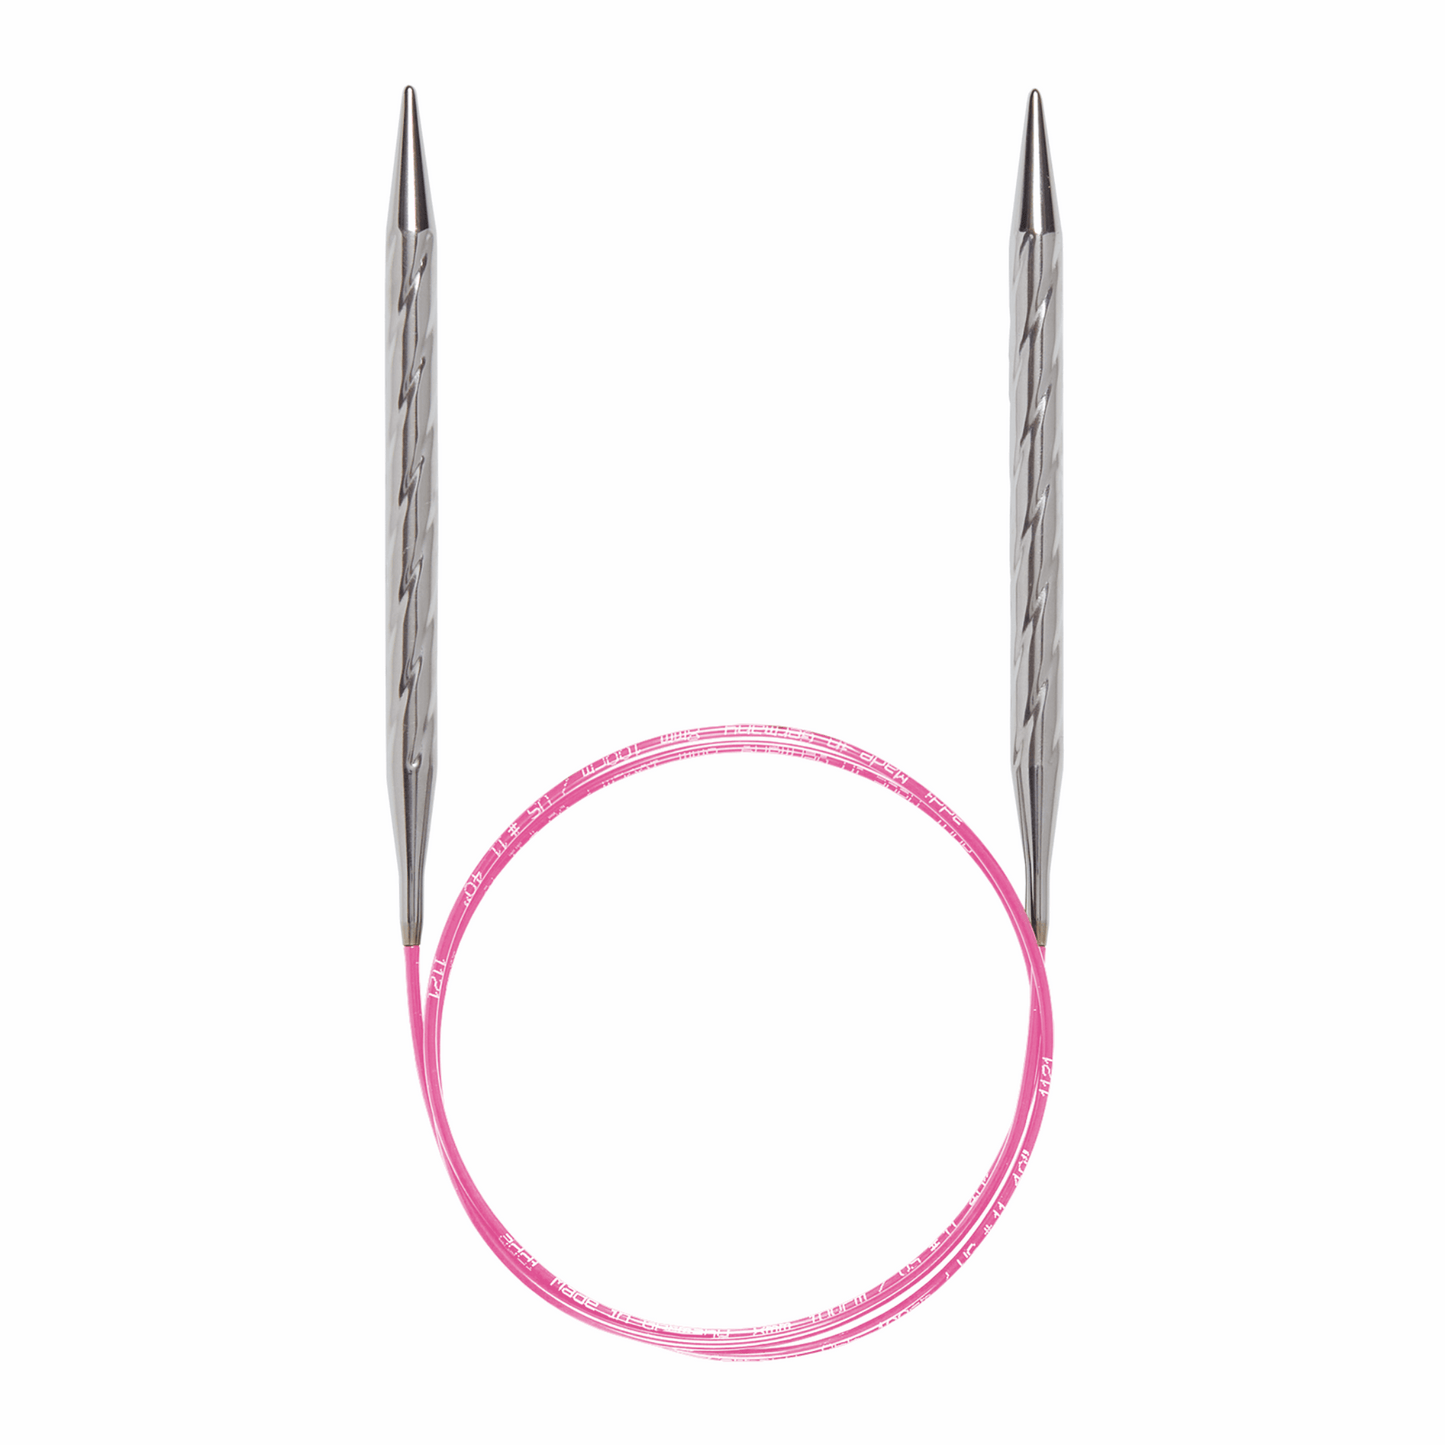 Addi, Unicorn circular knitting needle, 61157, size 3.5, length 100